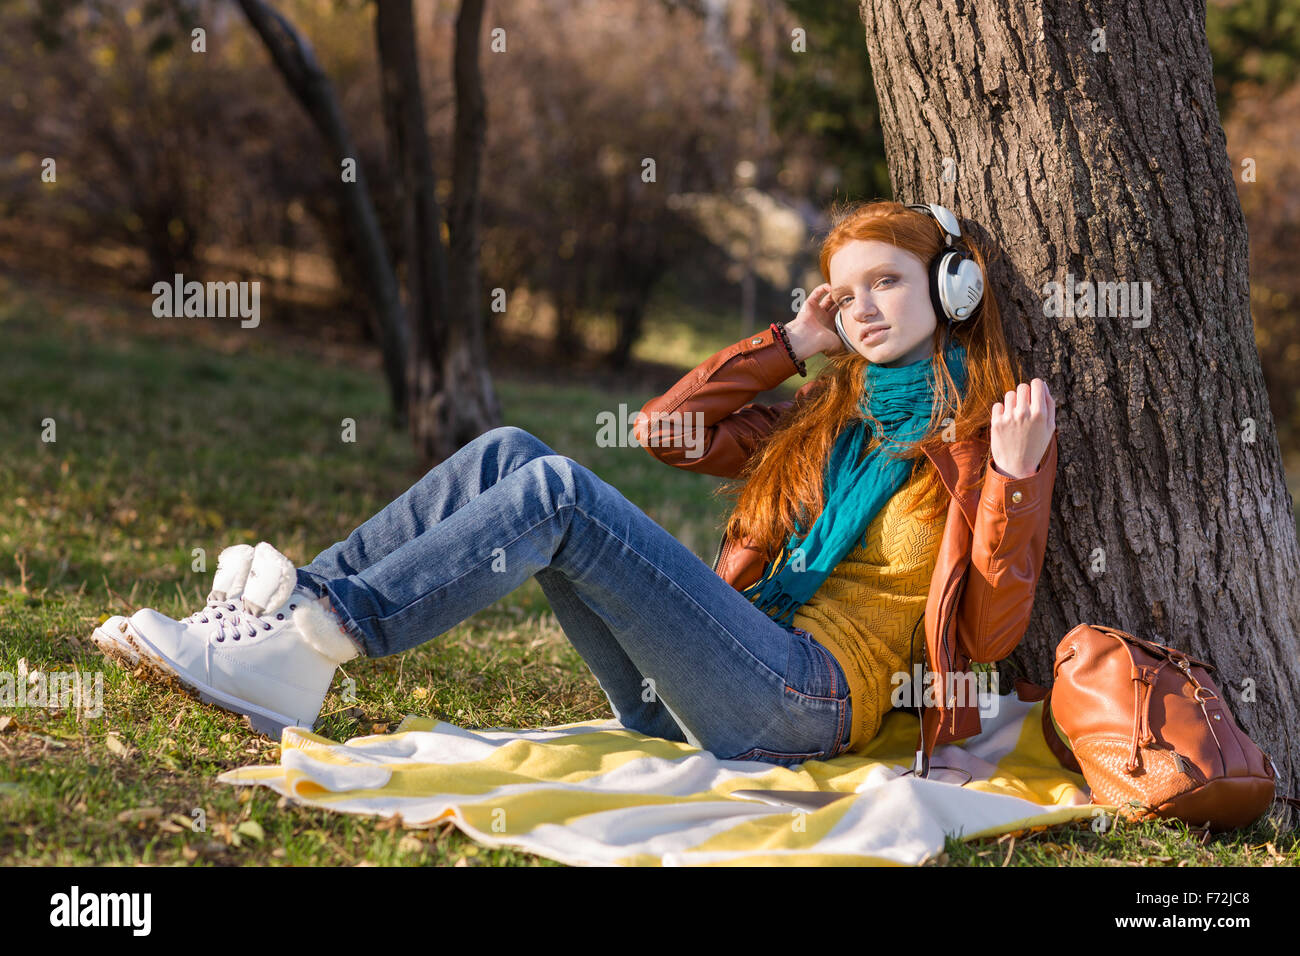 Attraente rilassata giovane lady ascoltando la musica seduto sotto la struttura ad albero nel parco Foto Stock